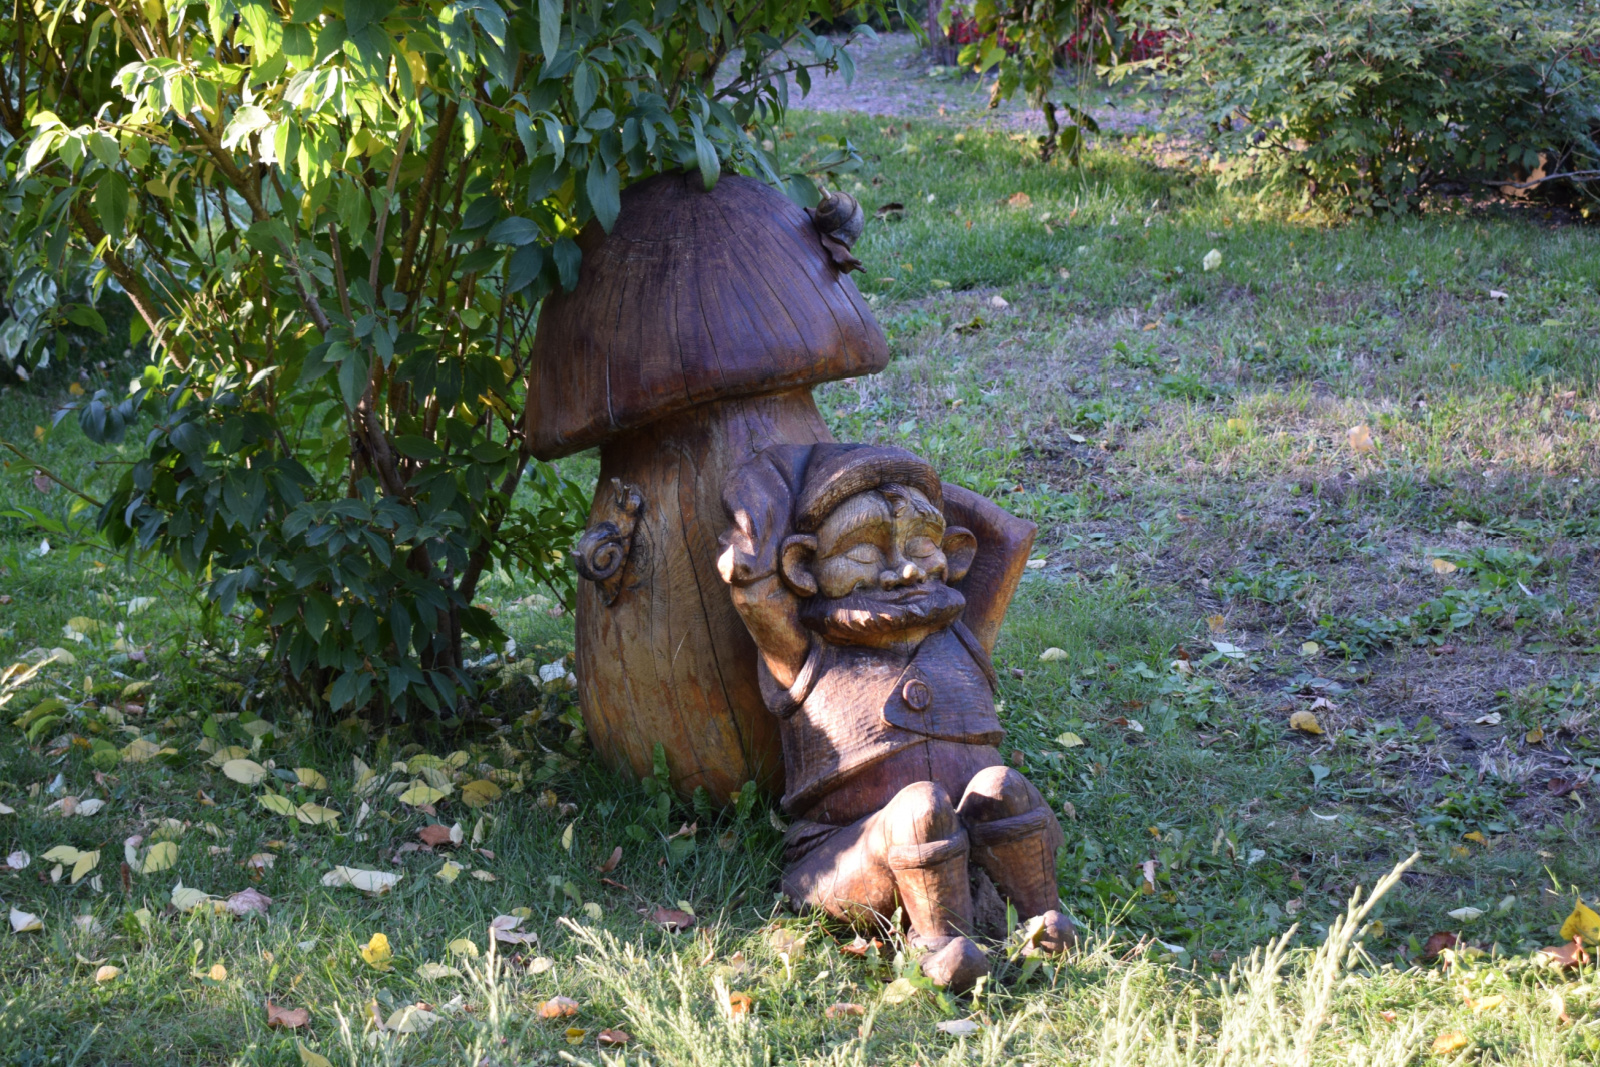 wooden sculpture of dwarf resting under a mushroom in the garden.